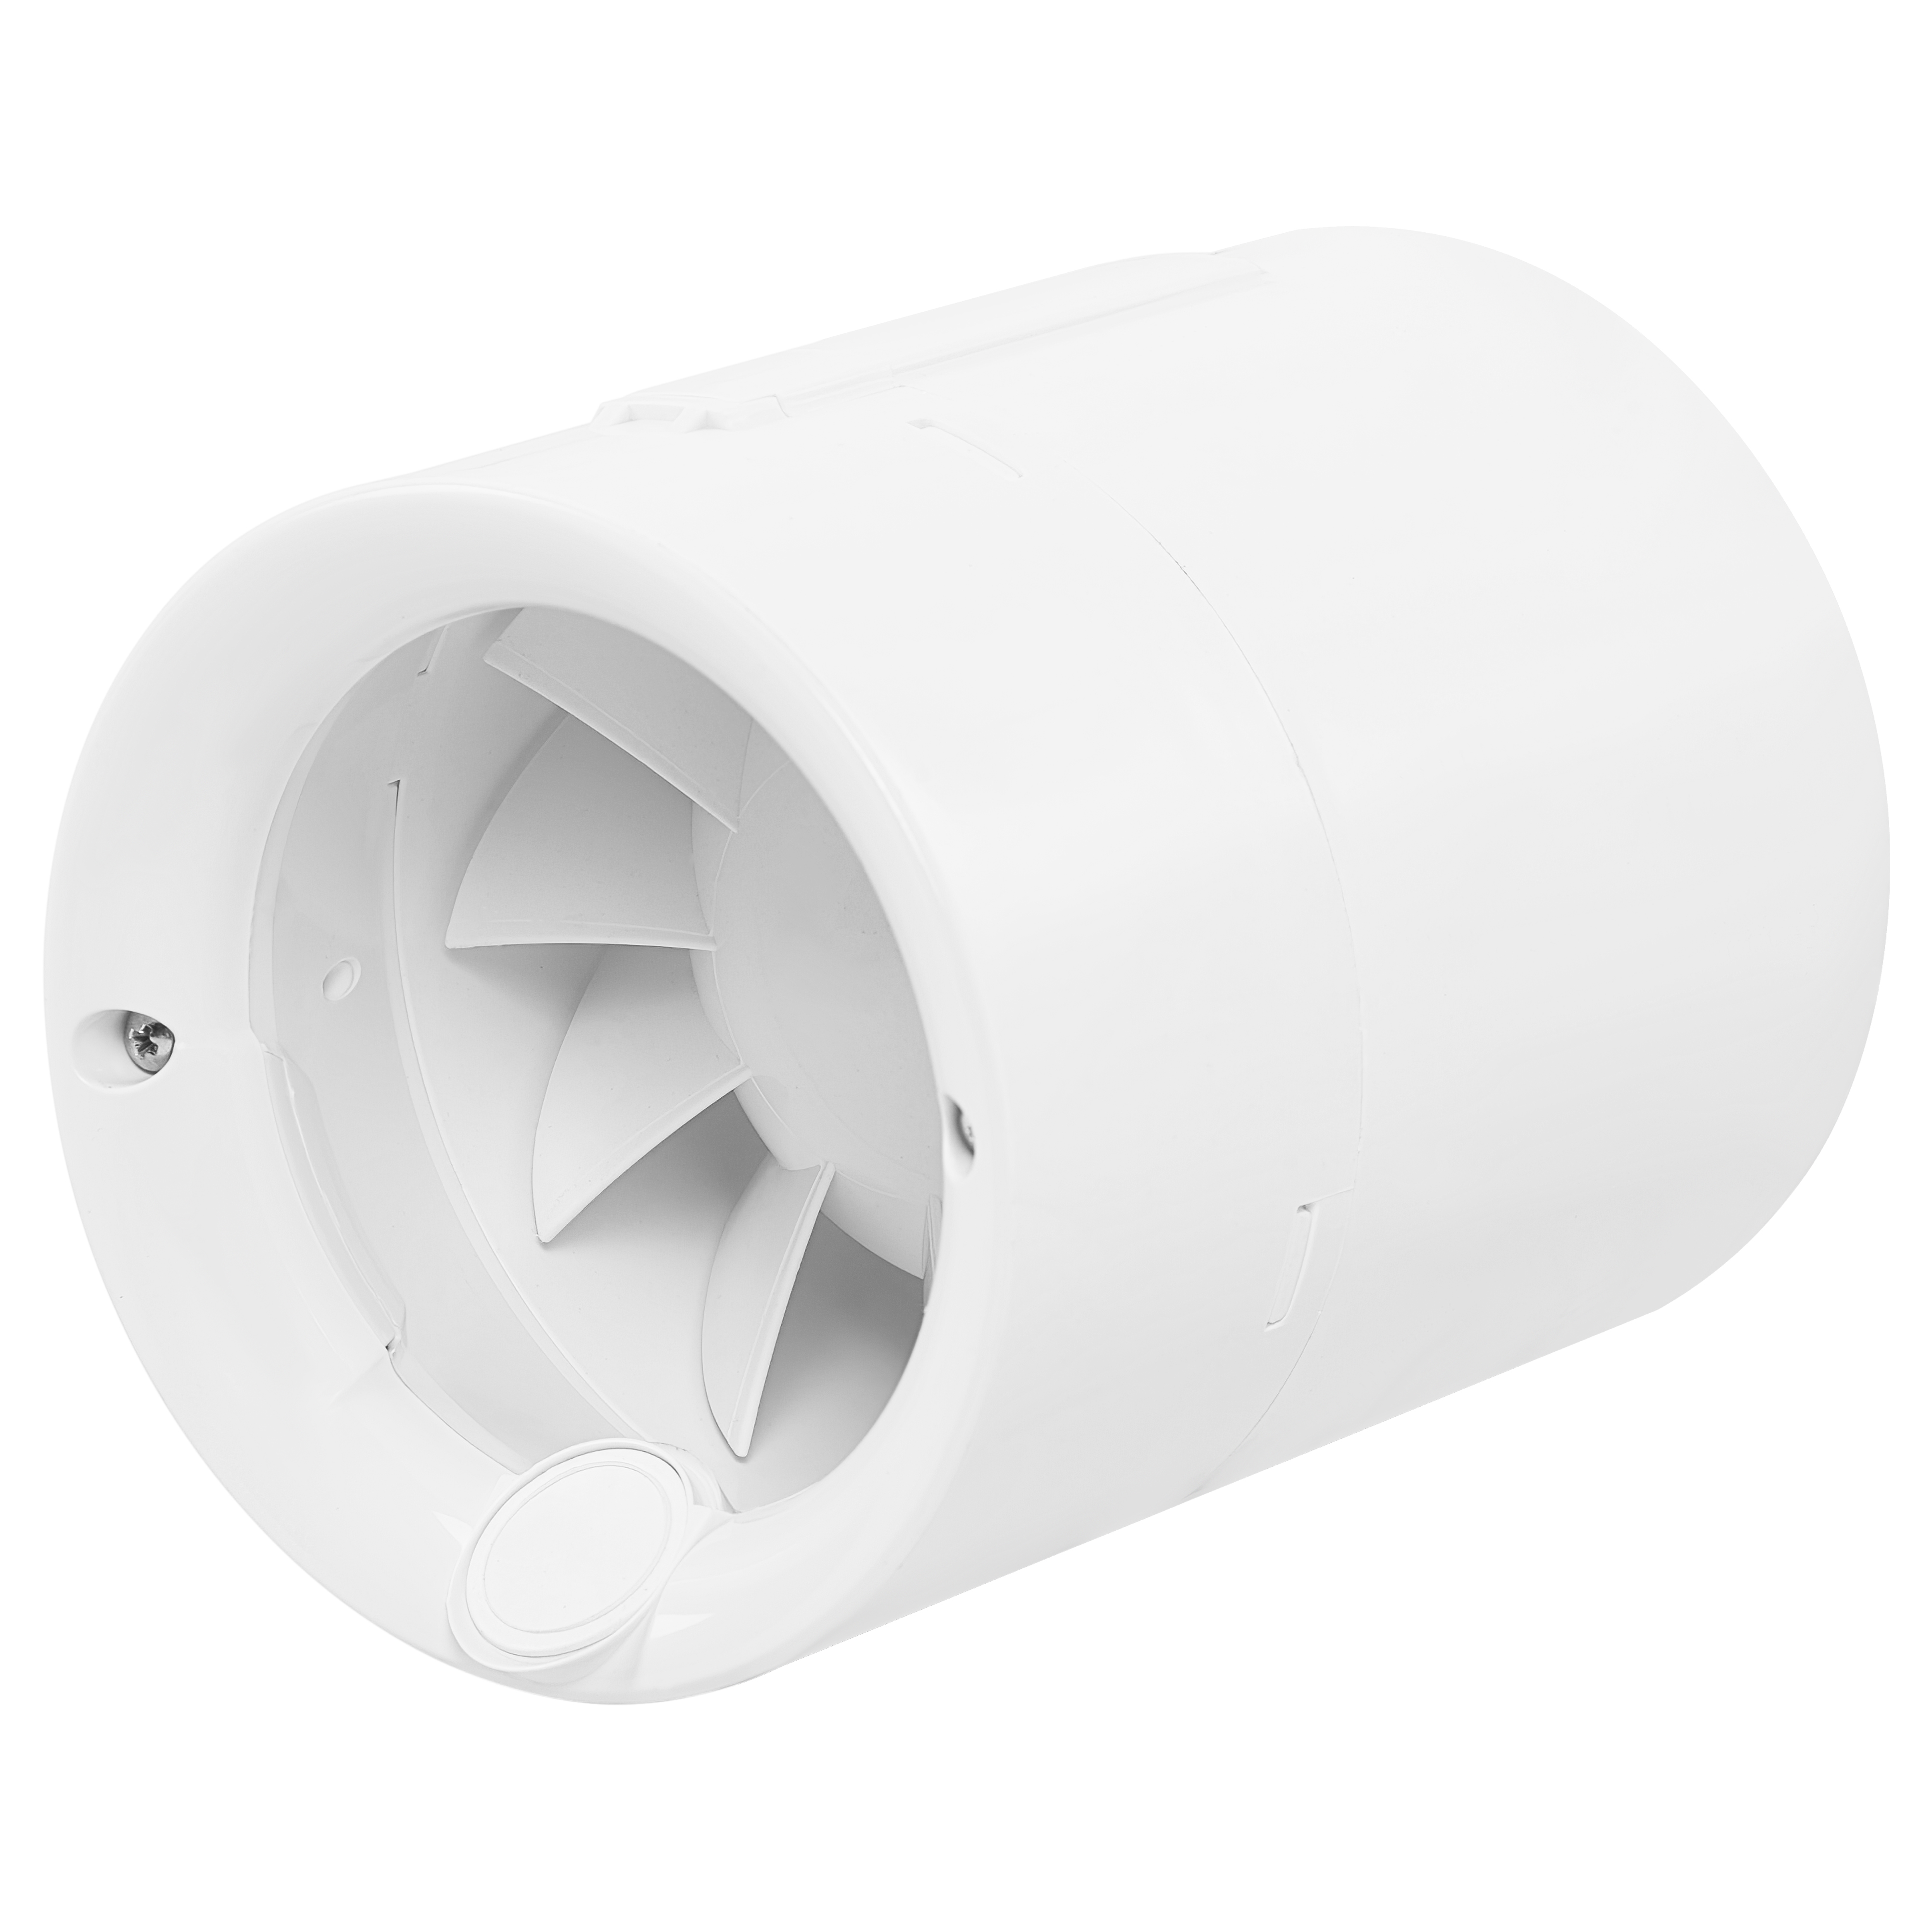 Характеристики приточный канальный вентилятор Soler&Palau Silentub-100